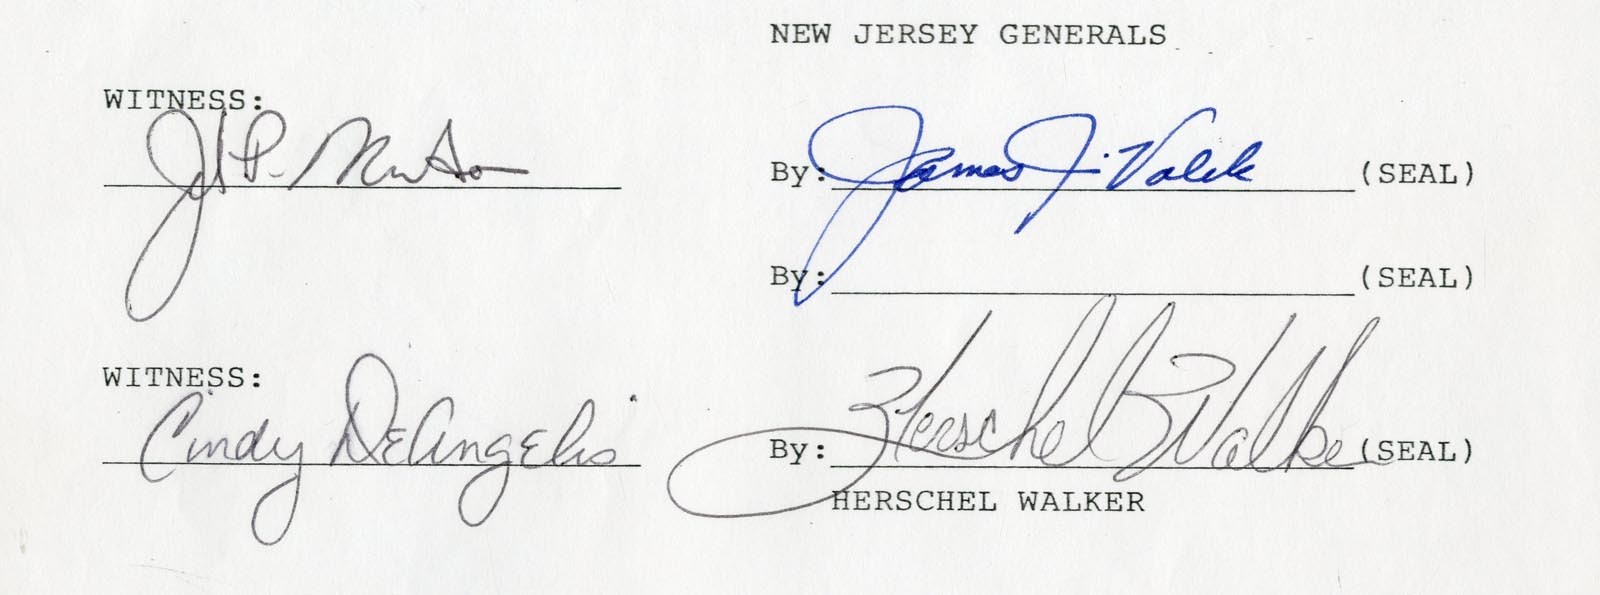 - 1983 Herschel Walker New Jersey Generals Signed Contract